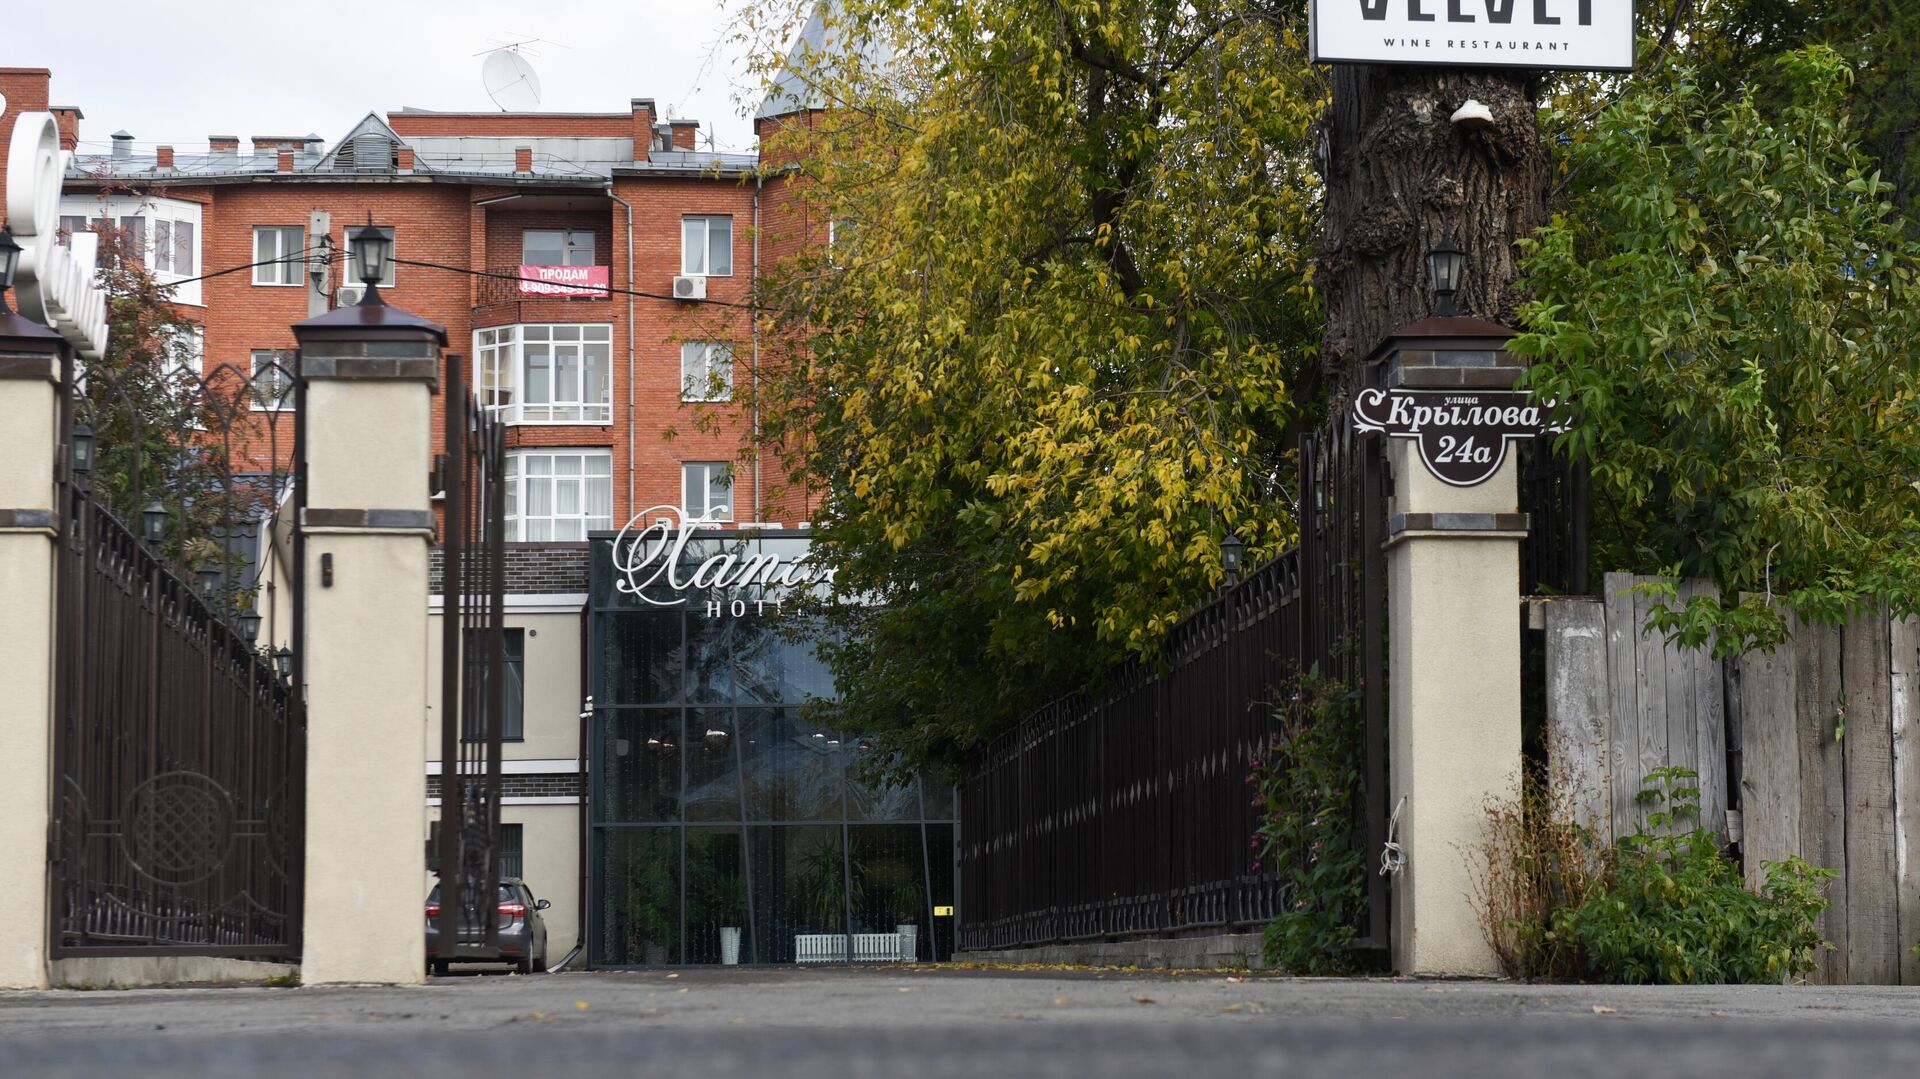 Гостиница Xander Hotel в Томске, где жил Алексей Навальный - РИА Новости, 1920, 21.09.2020